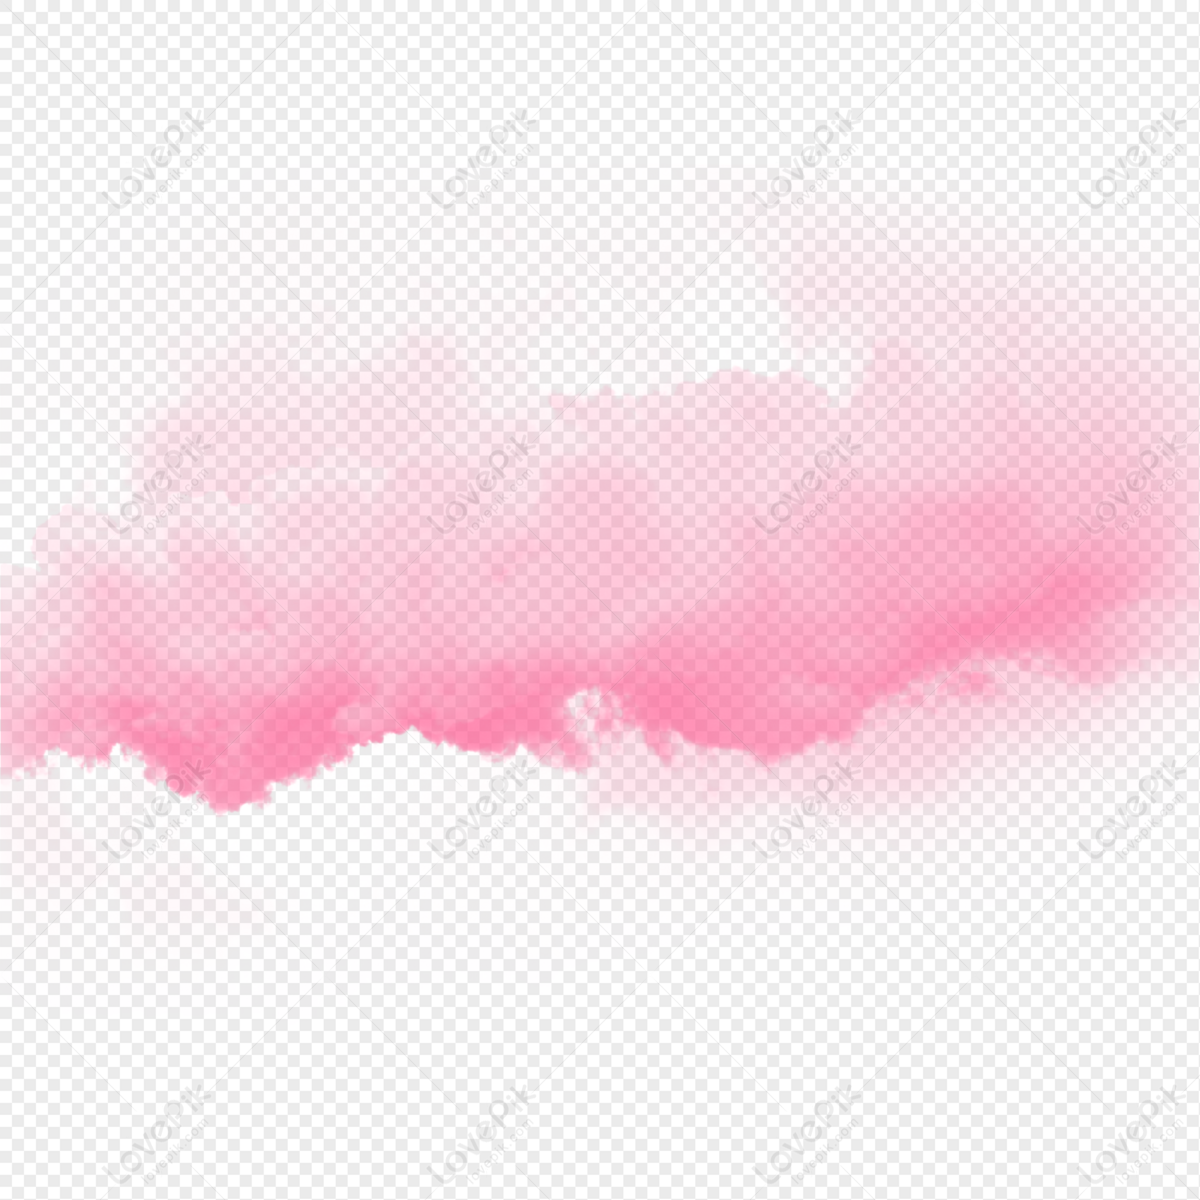 Đám mây hồng nổi bật là một cảnh tượng đẹp, mang đến sự phấn khích và tinh thần lạc quan. Hãy xem hình ảnh để tận hưởng trọn vẹn sự đặc biệt của cảnh tượng đầy màu sắc này.